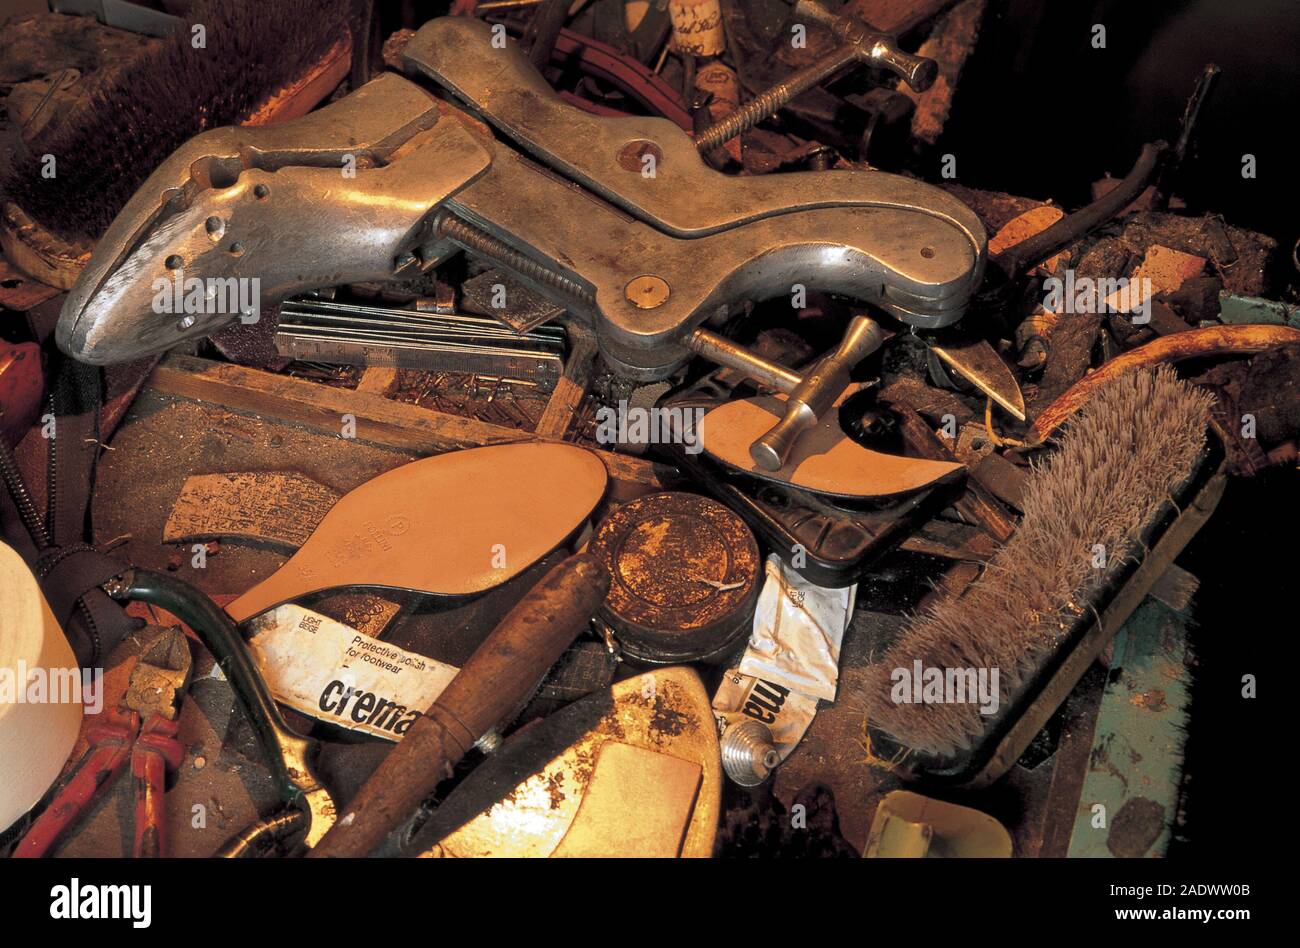 italy, abruzzo, pescina, tools of a shoemaker Stock Photo